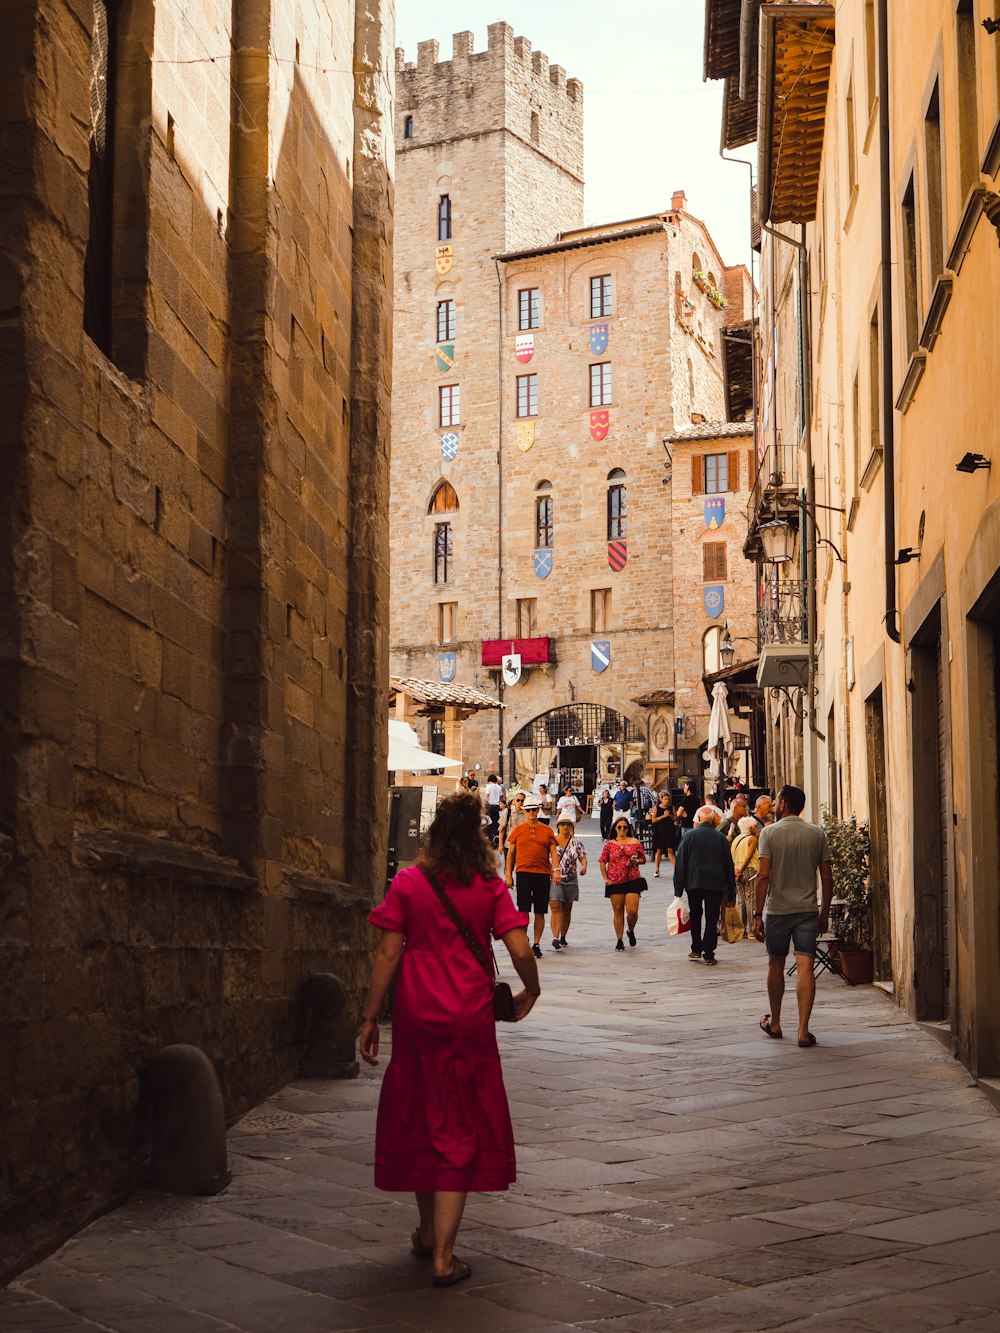 Una persona con un vestido rojo caminando por una calle entre edificios